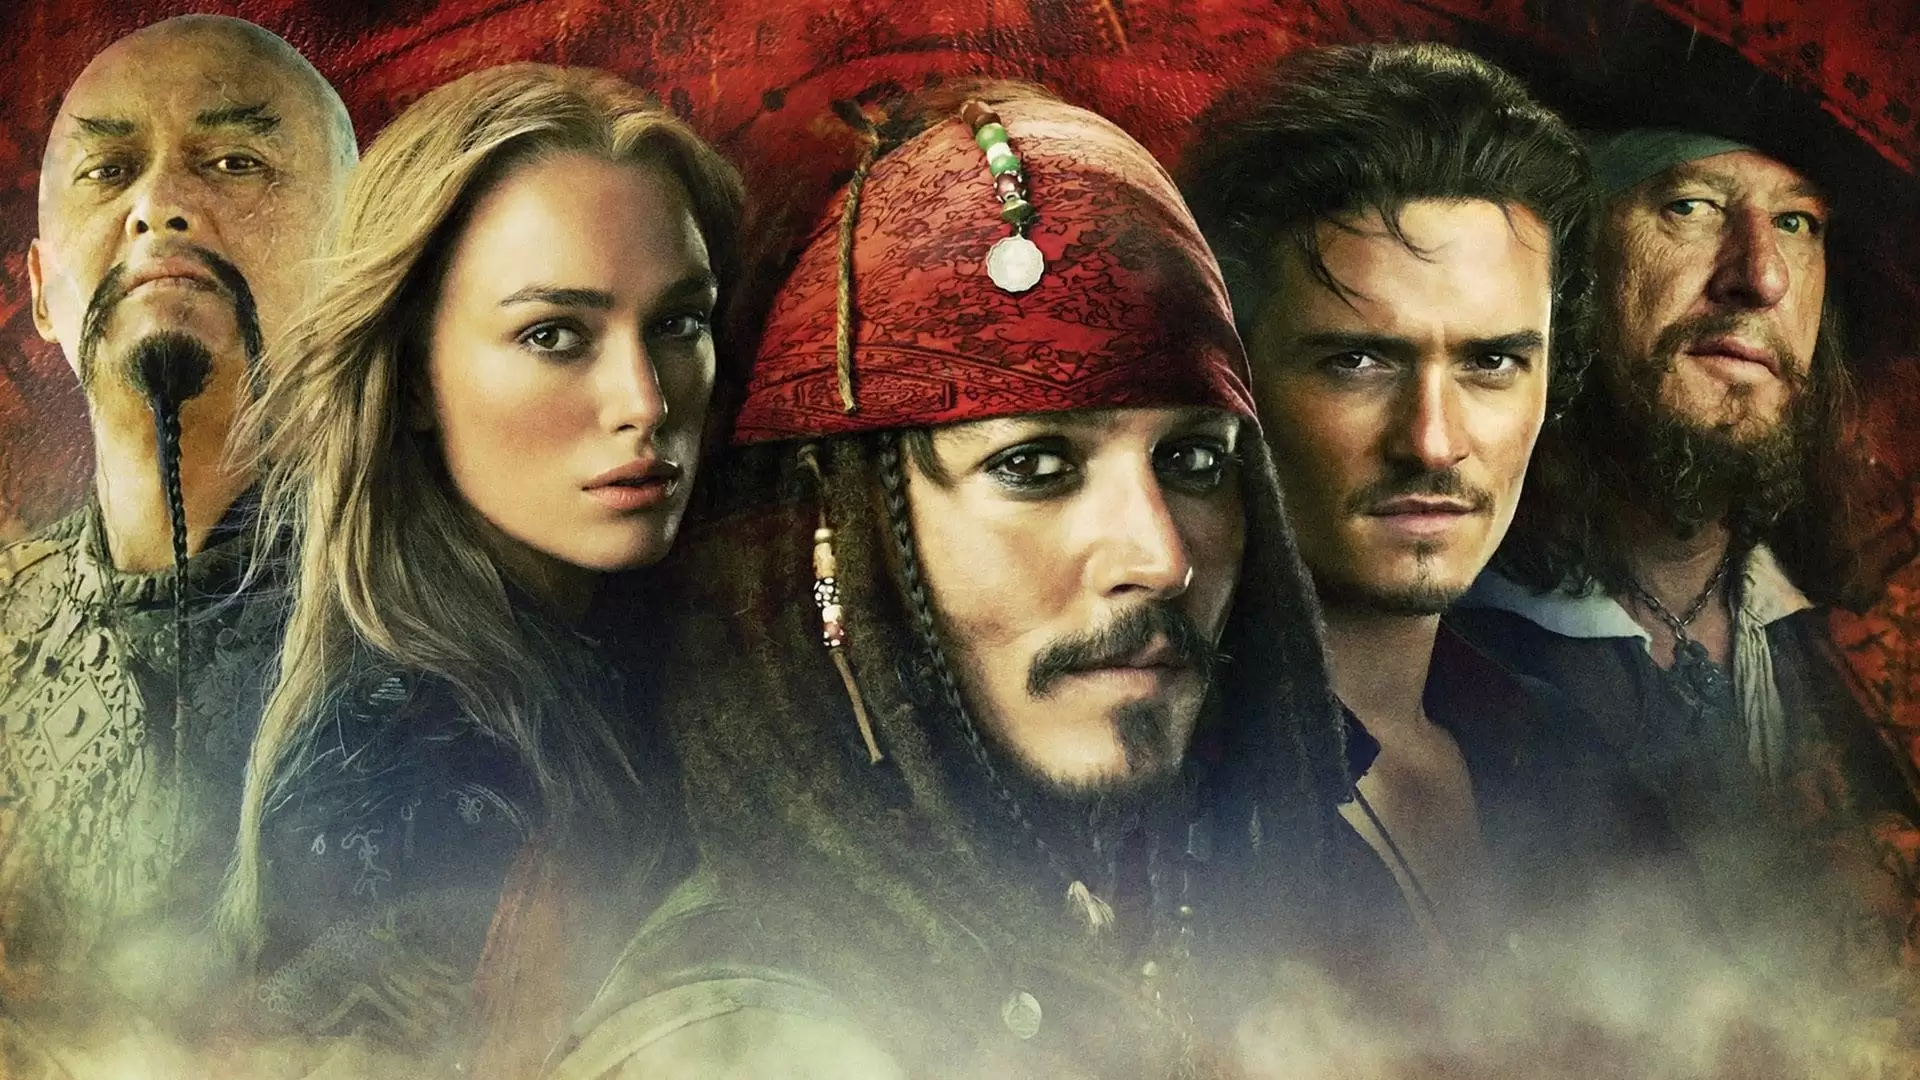 دانلود فیلم Pirates of the Caribbean: At World’s End 2007 (دزدان دریایی کارائیب: پایان جهان) با زیرنویس فارسی و تماشای آنلاین